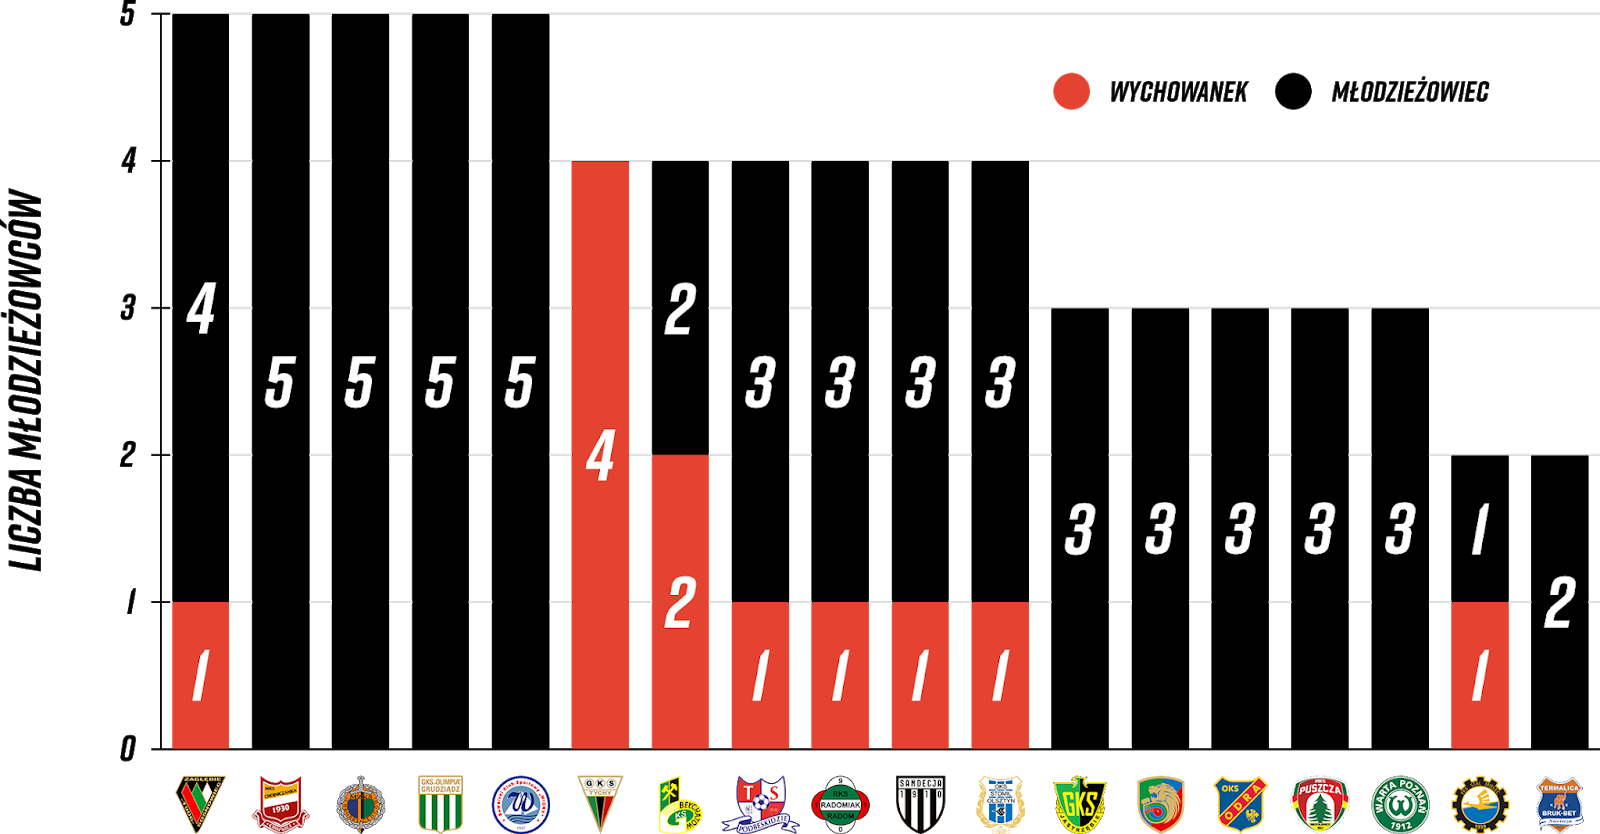 Liczba młodzieżowców, którzy zagrali w tym sezonie Fortuna 1 Ligi<br><br>Źródło: Opracowanie własne na podstawie 90minut.pl<br><br>graf. Bartosz Urban